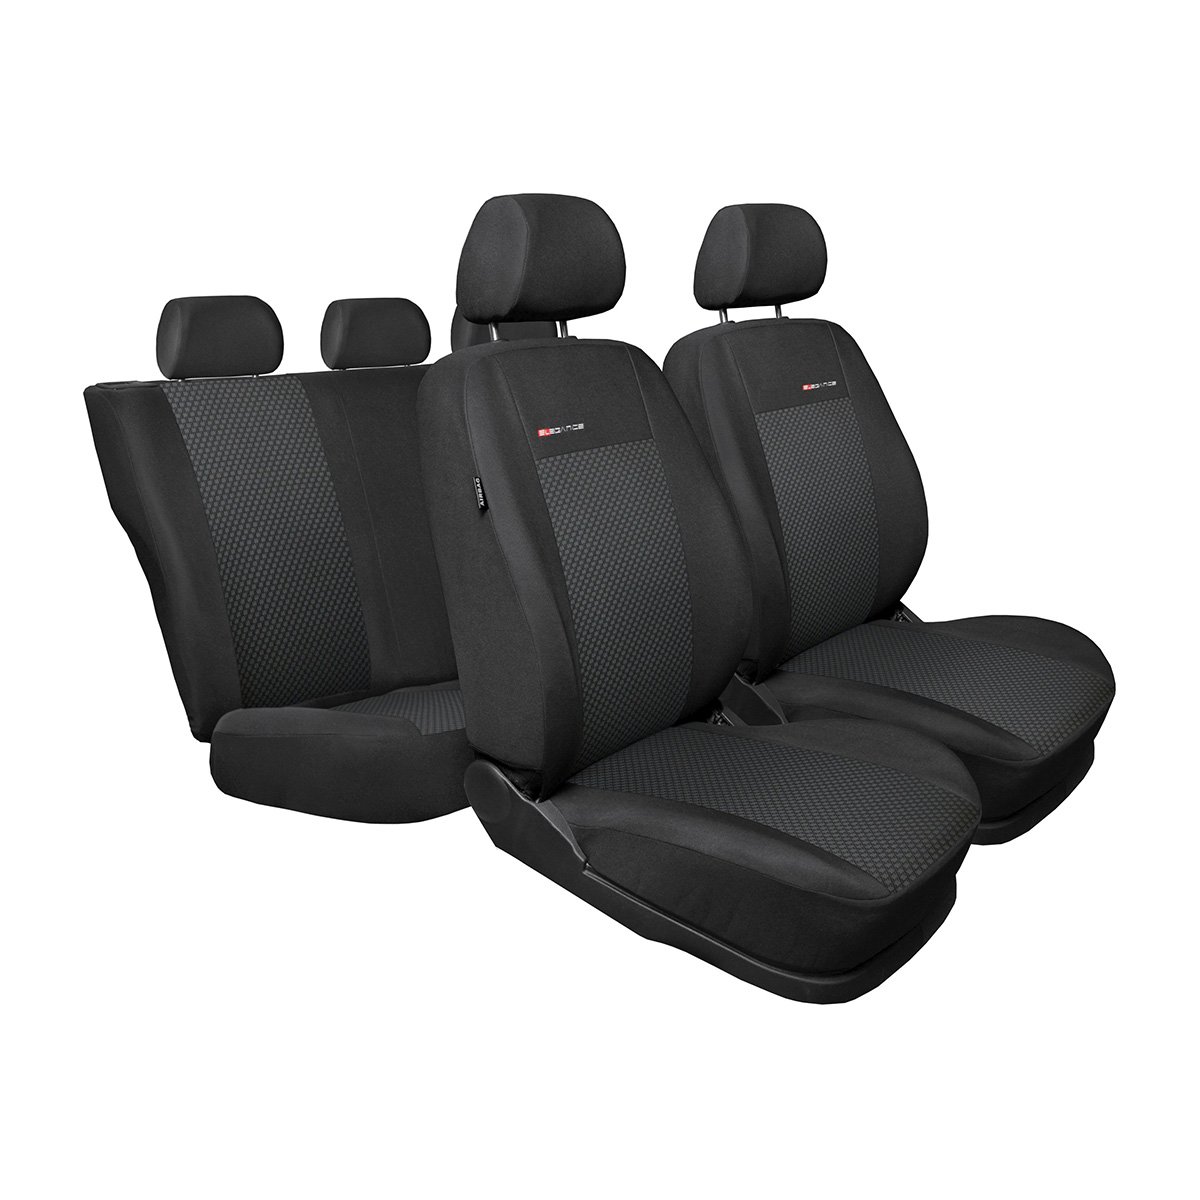 Mossa - Maßgeschneiderte Sitzbezüge Auto kompatibel mit BMW X3 SAV (2003-2010) - Autositzbezüge Schonbezüge für Autositze - E3 von Mossa